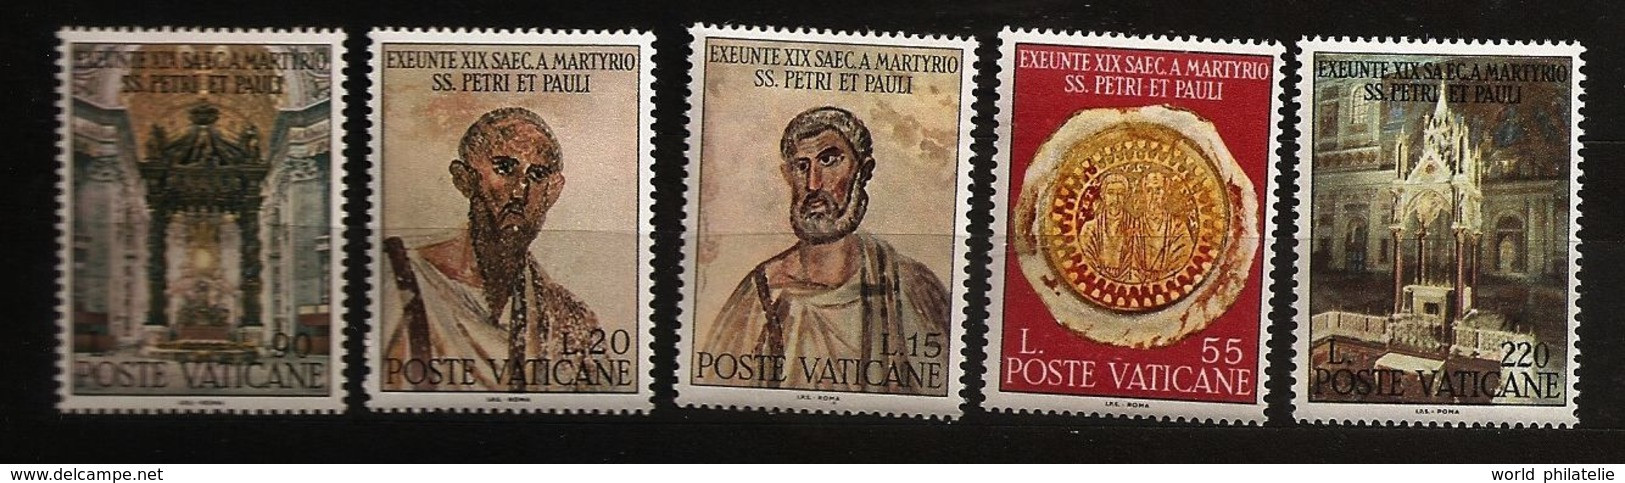 Vatican 1967 N° 466 / 70 ** Saint Pierre, Saint Paul, Sceau, Baldaquin De Bernini, Rome, Arnolfo Di Cambilo, Tabernacle - Nuevos